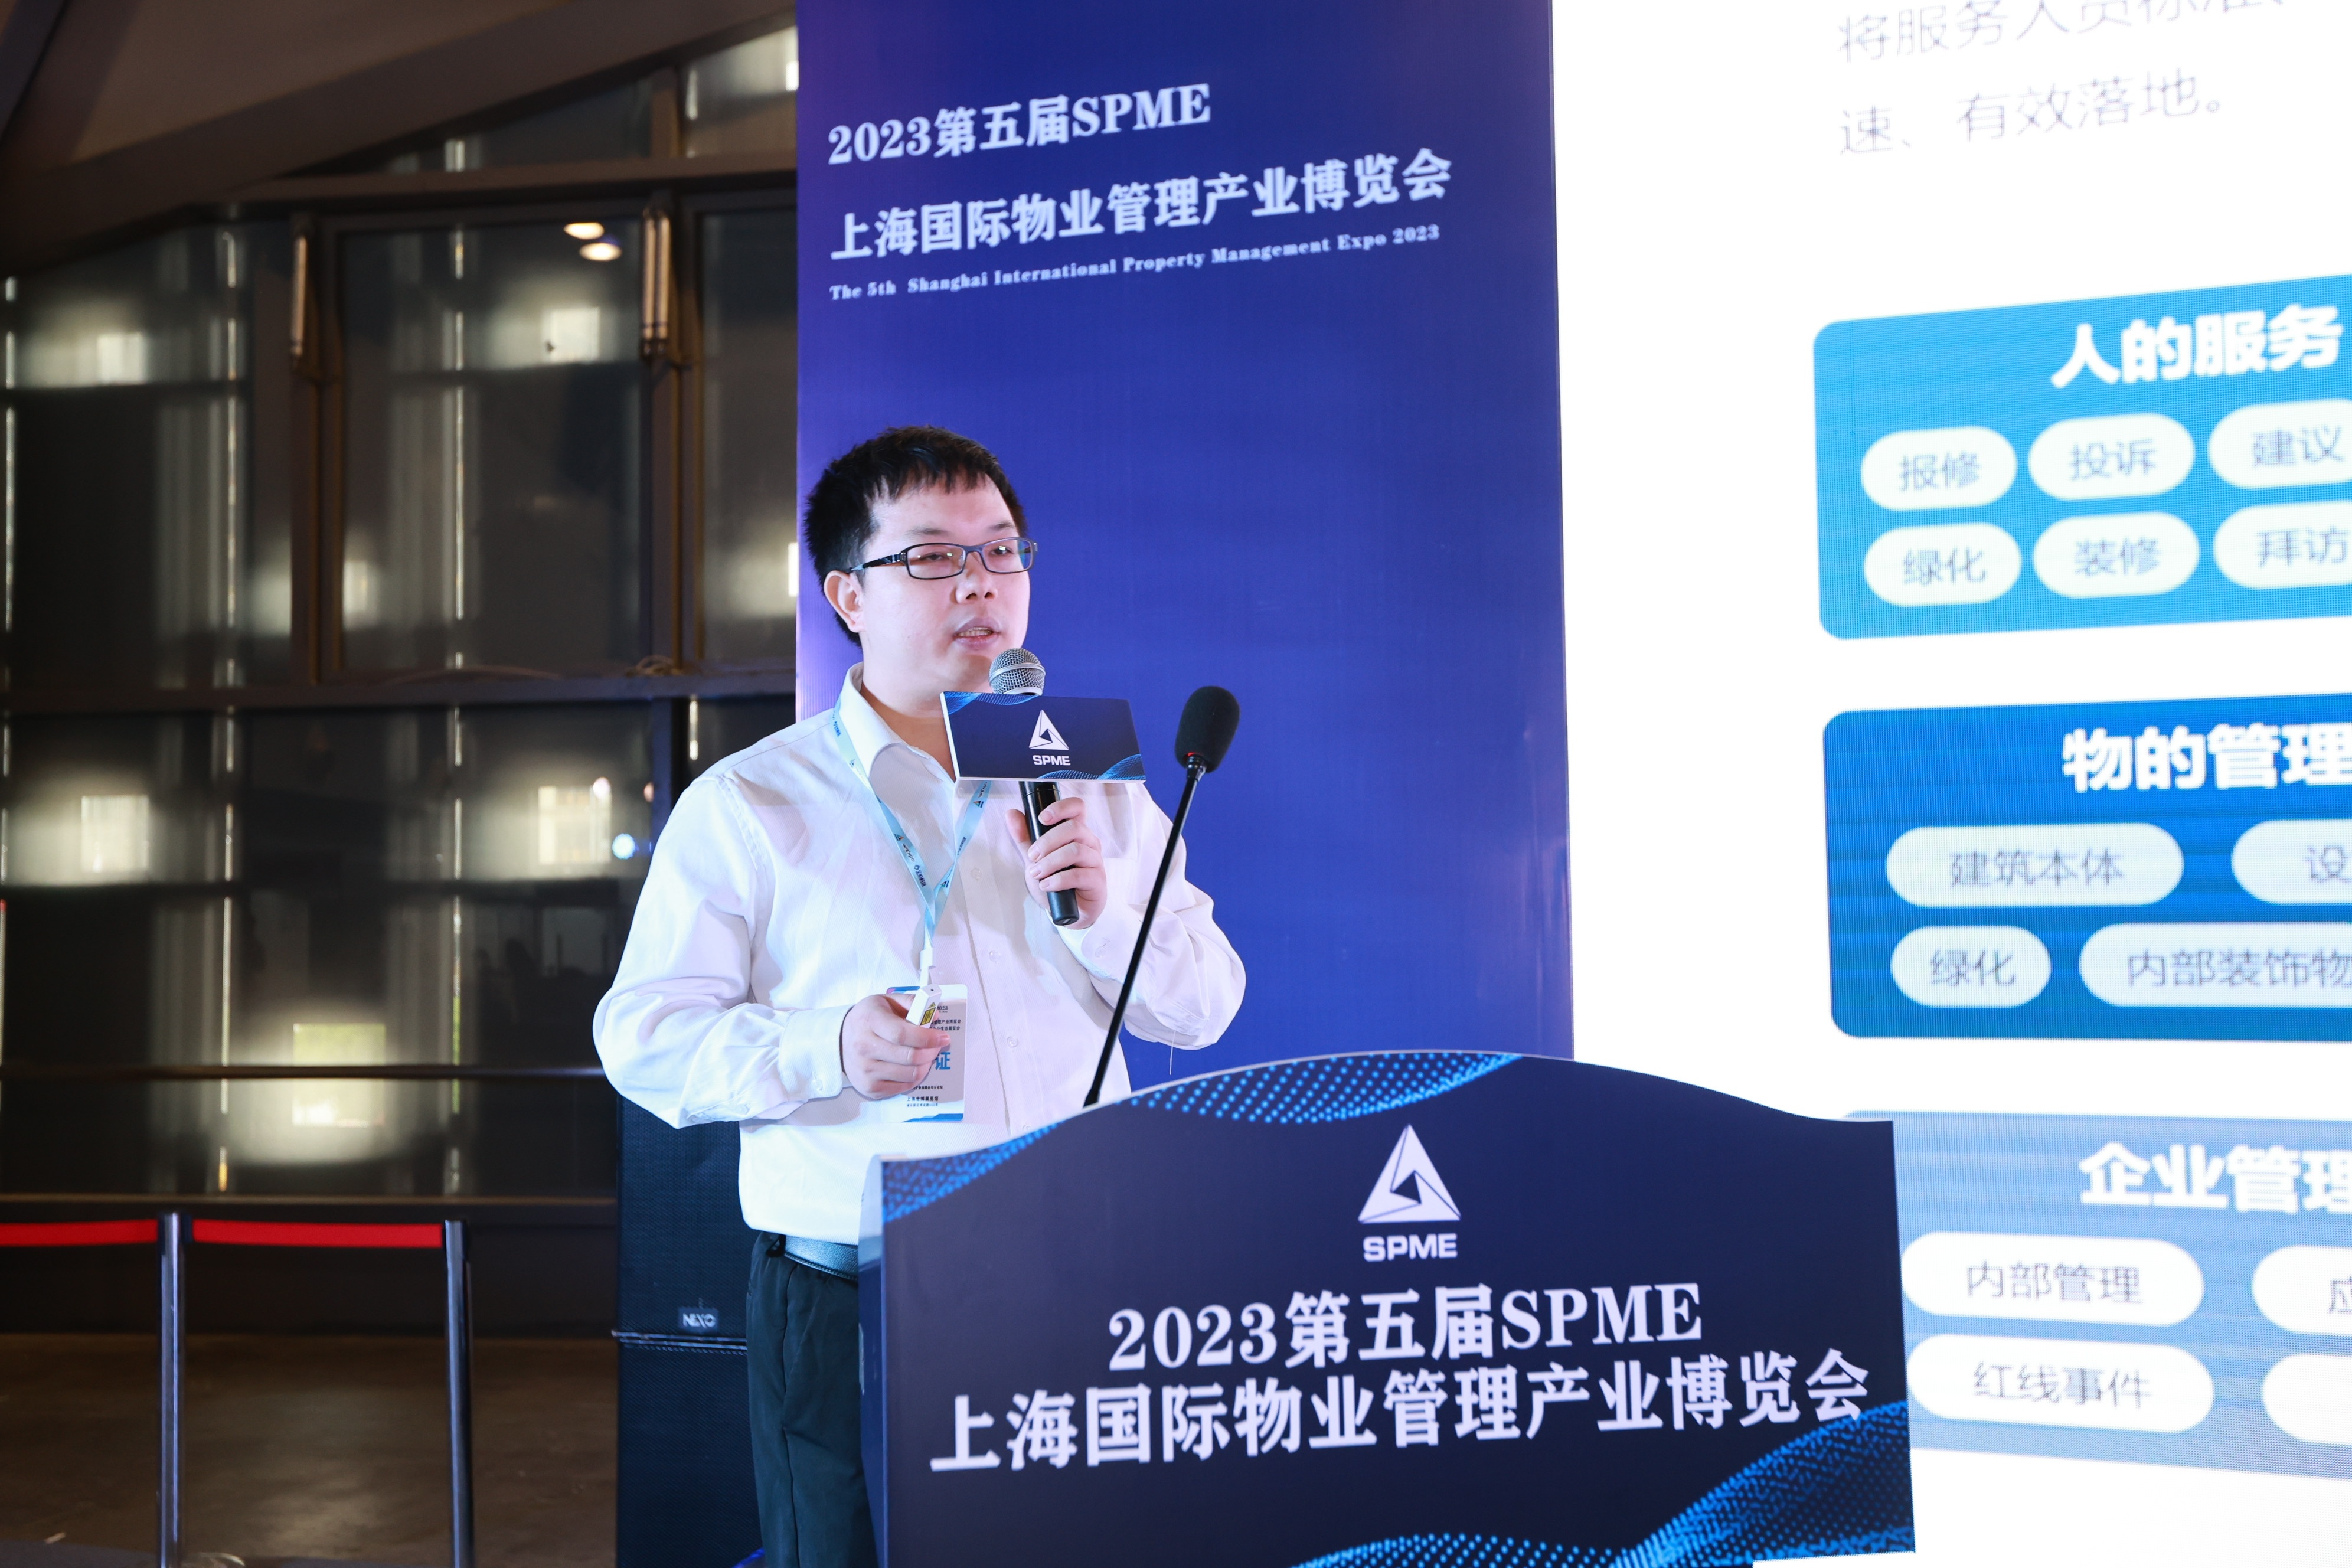 第五届SPME上海国际物业管理产业博览会极致科技演讲